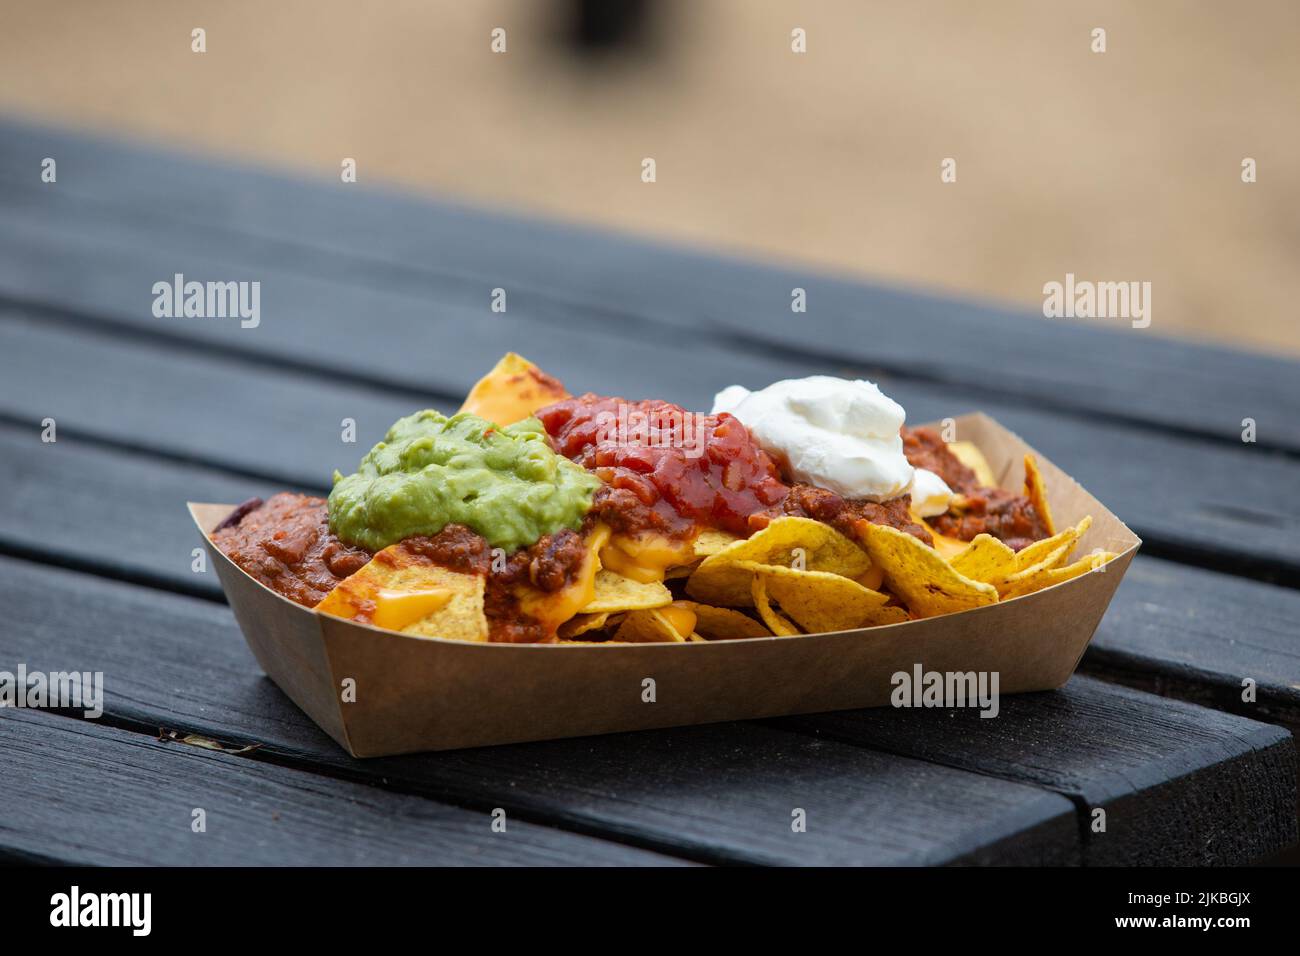 Porción de comida callejera, nachos de chile y queso con guacamole, salsa y crema agria Foto de stock